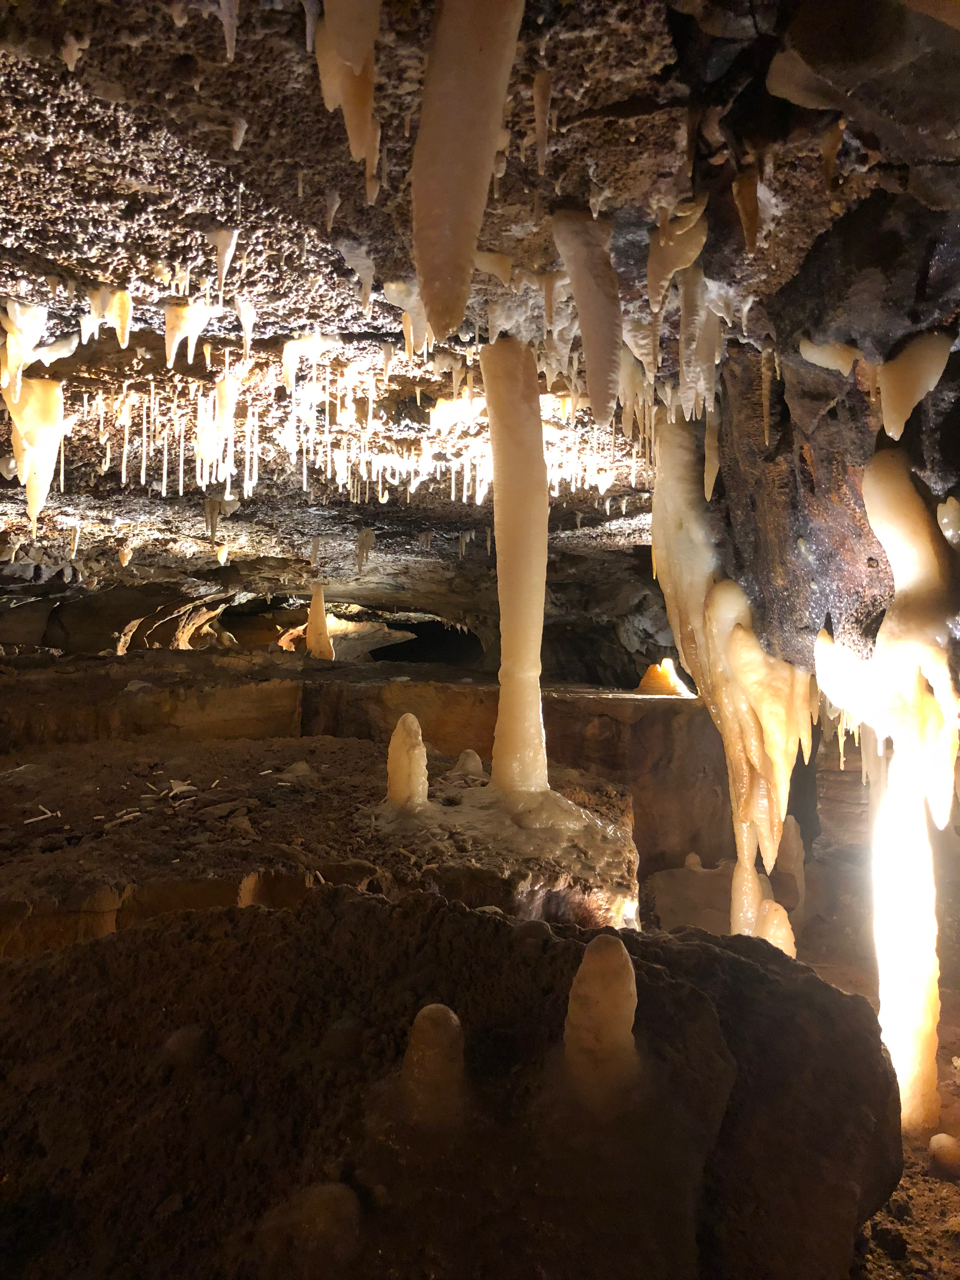 Inside Ohio Caverns